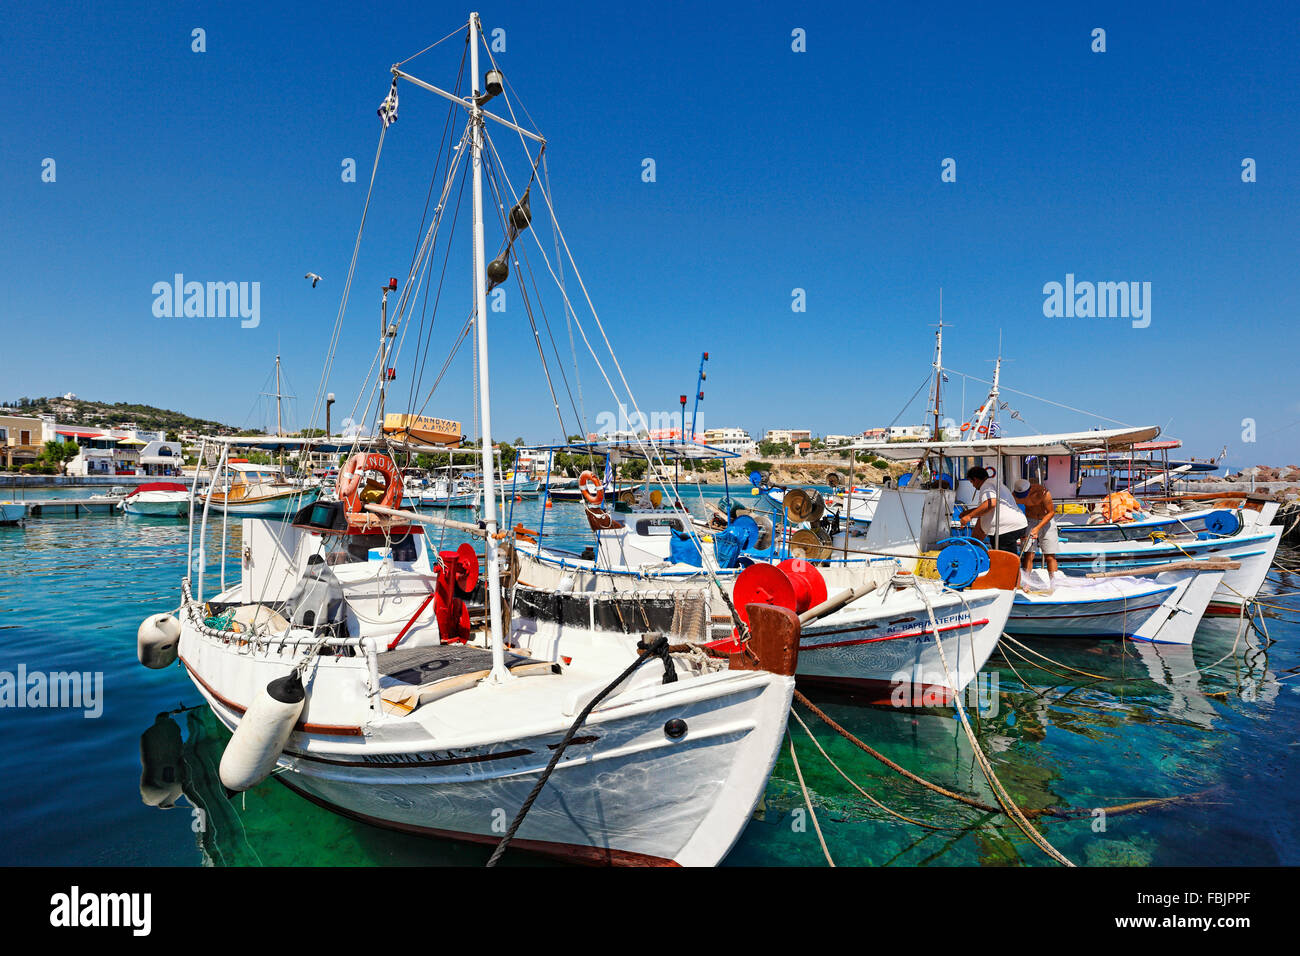 Bateaux de pêche au port de La Mongie dans Aegina island, Grèce Banque D'Images